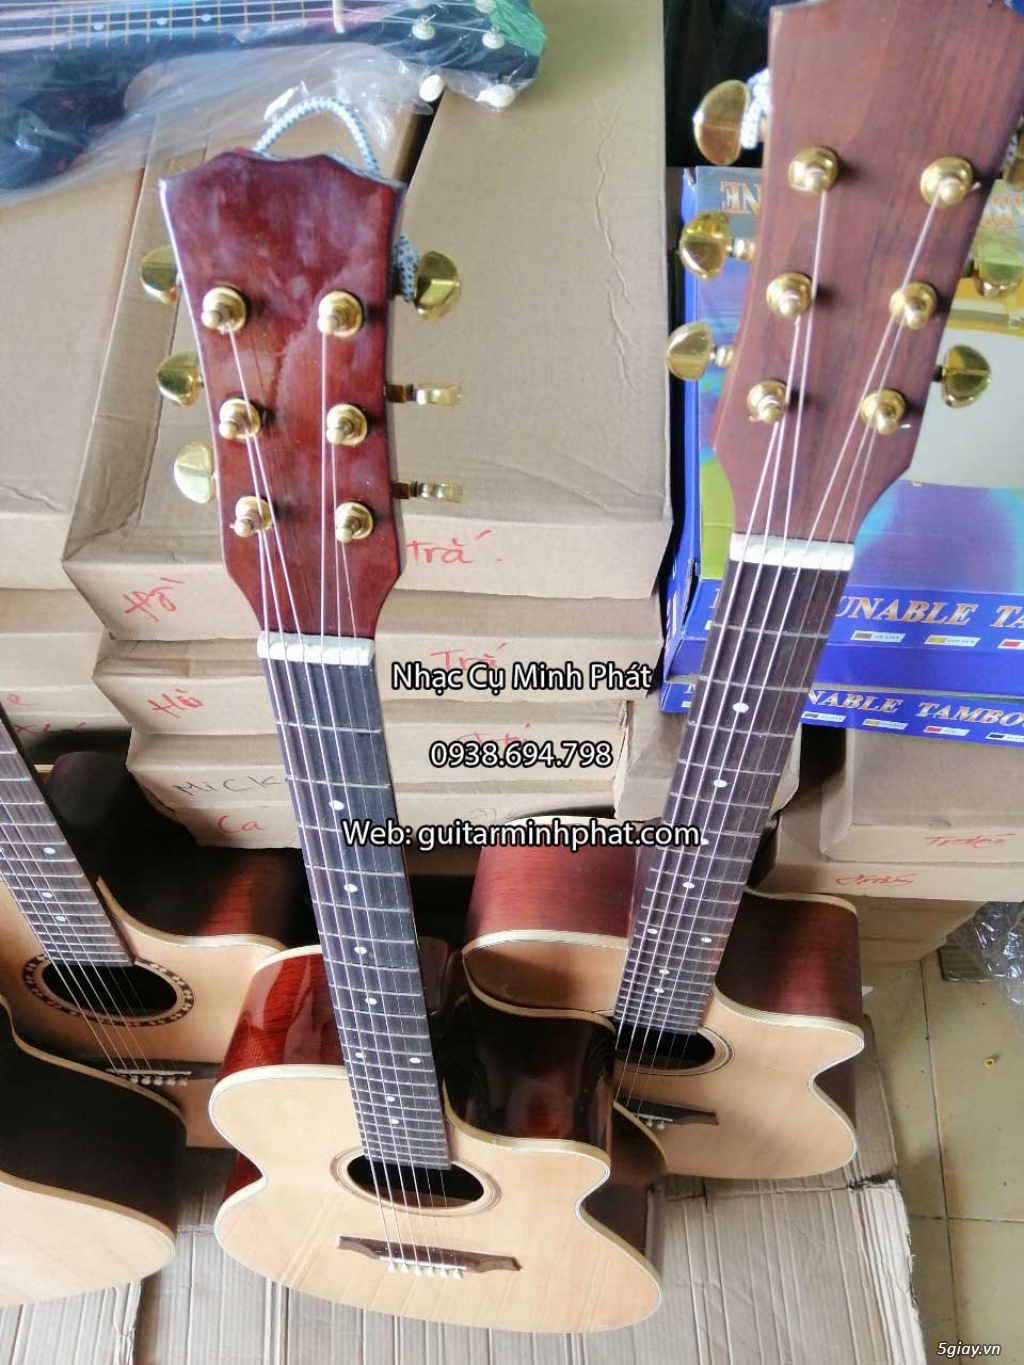 Bán đàn guitar, ukulele, kalimba giá rẻ ở quận Gò Vấp TPHCM - 9